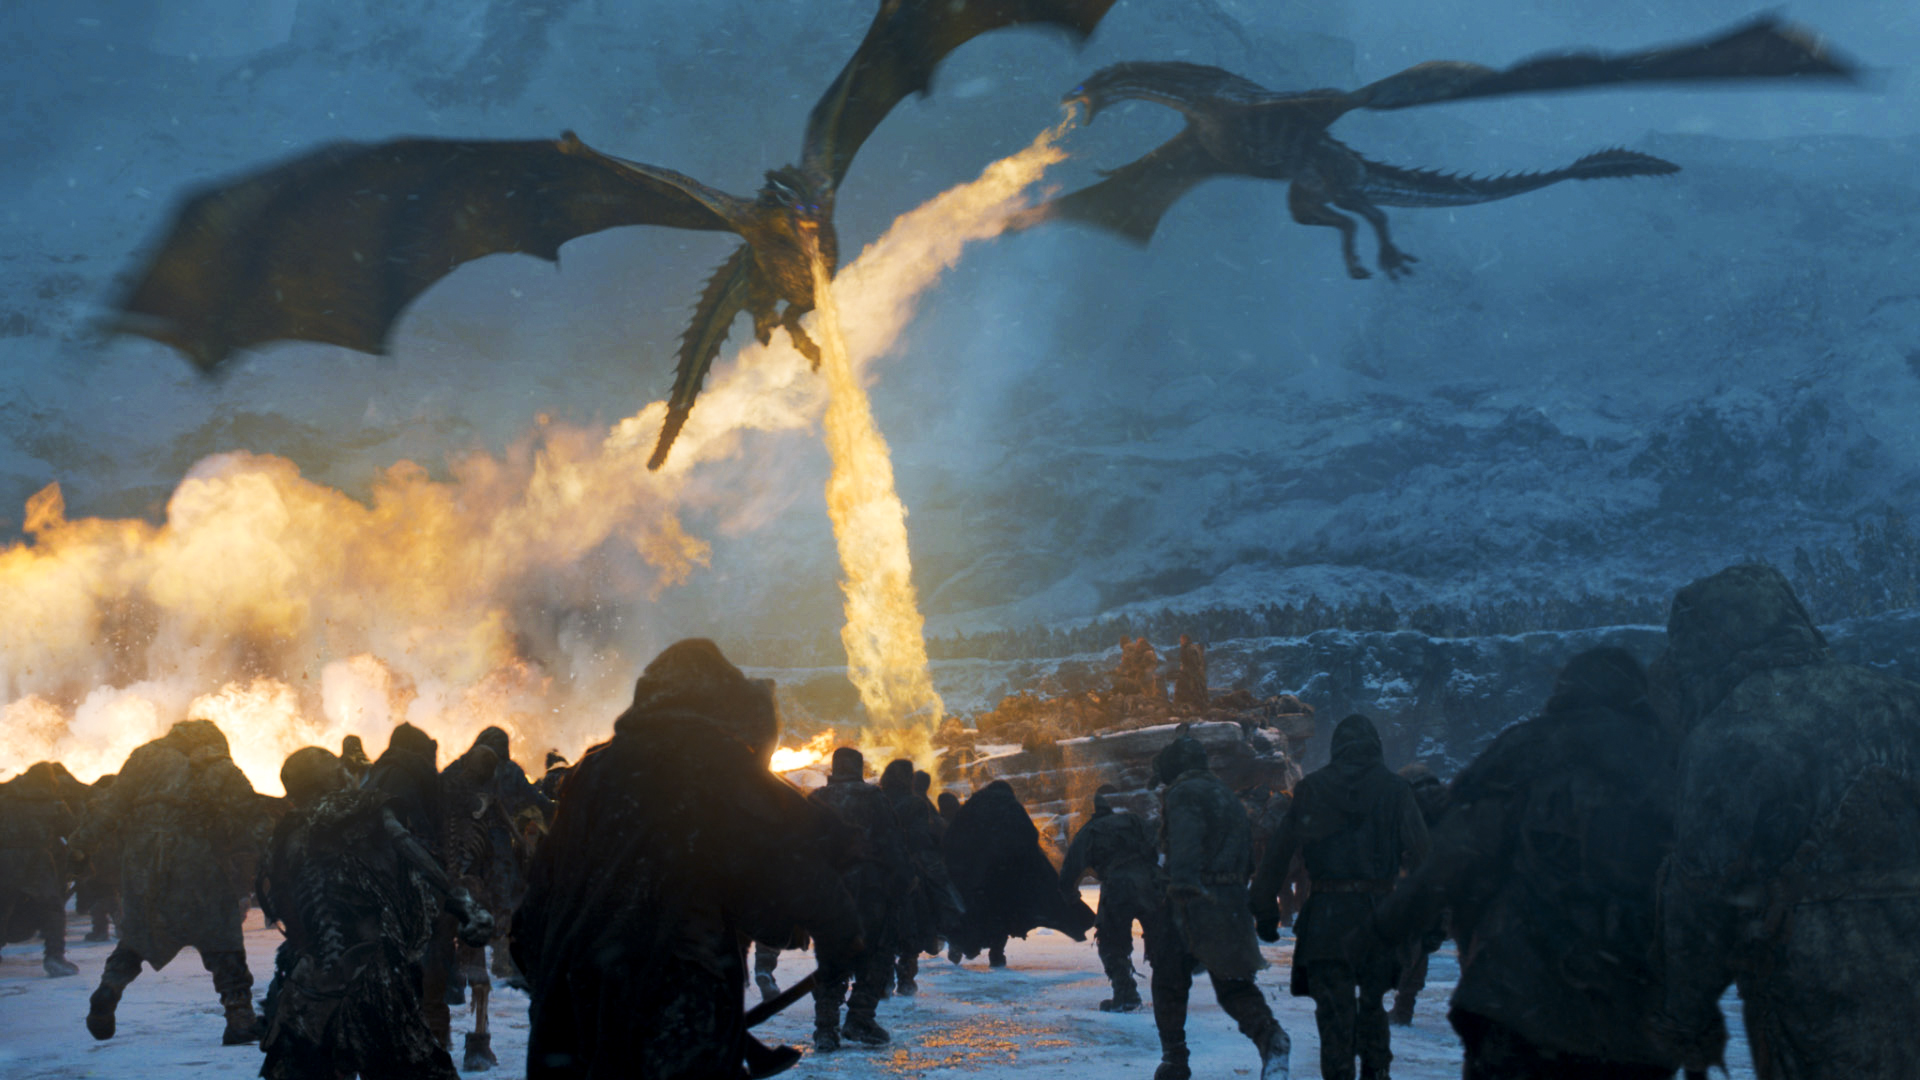 Proses Pembuatan Naga Animasi Dalam Serial Televisi - Game Of Thrones Dragon Breathing Fire - HD Wallpaper 